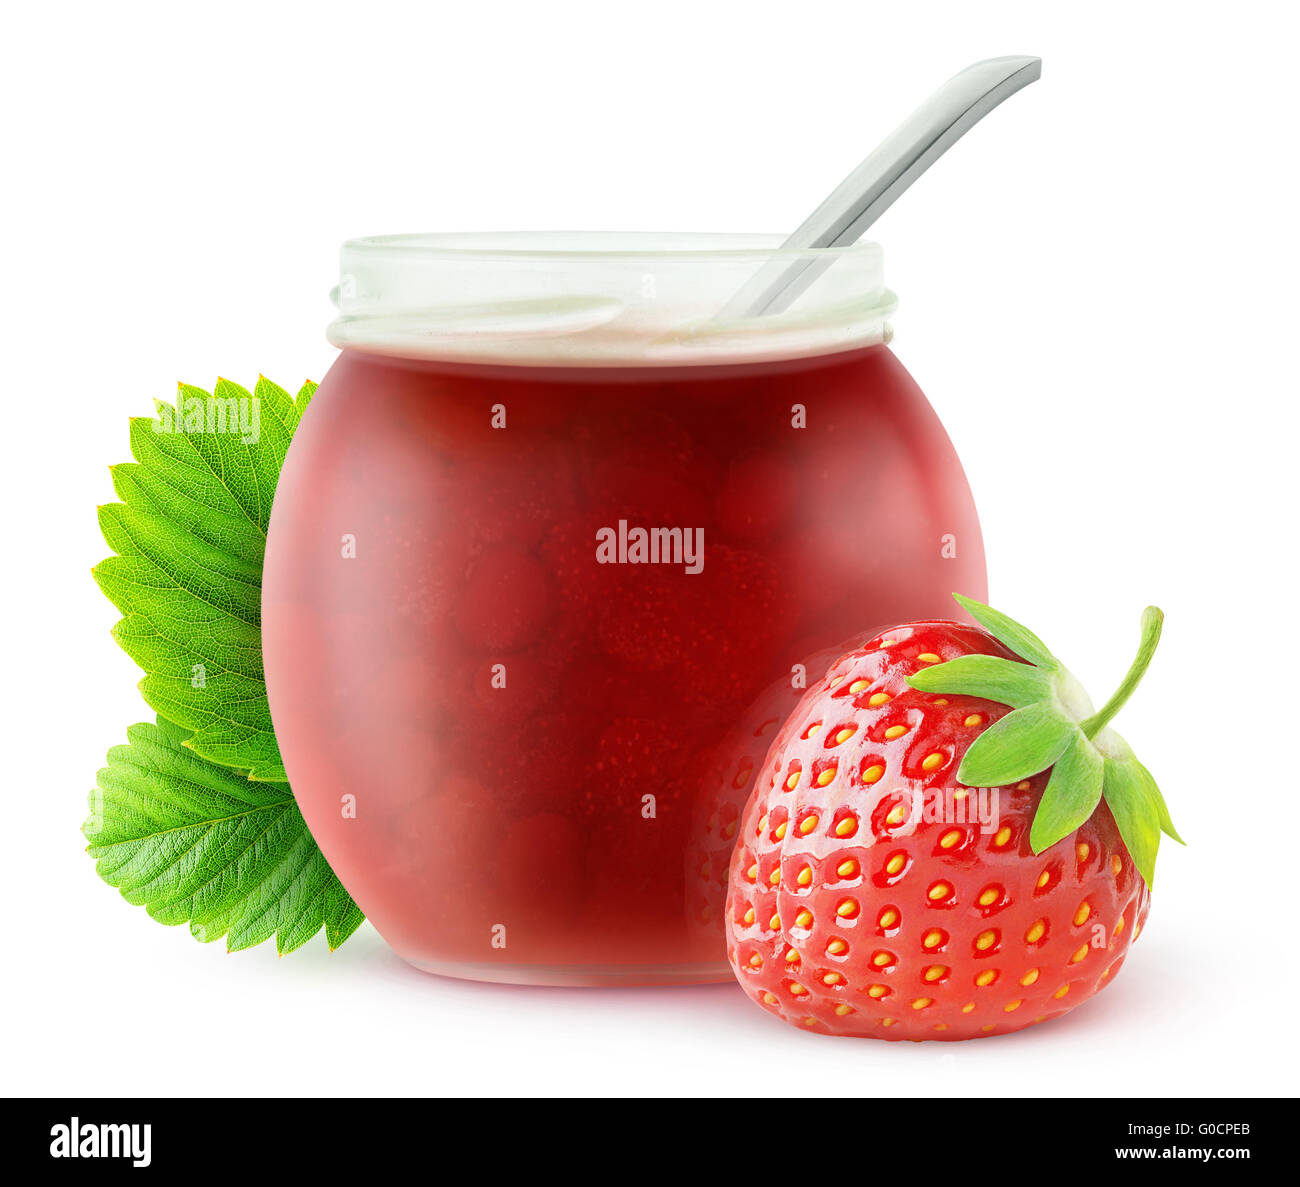 Confiture de fraises isolé. Fruits Fraise et ouvrir un bocal en verre avec de la marmelade, isolé sur fond blanc avec clipping path Banque D'Images